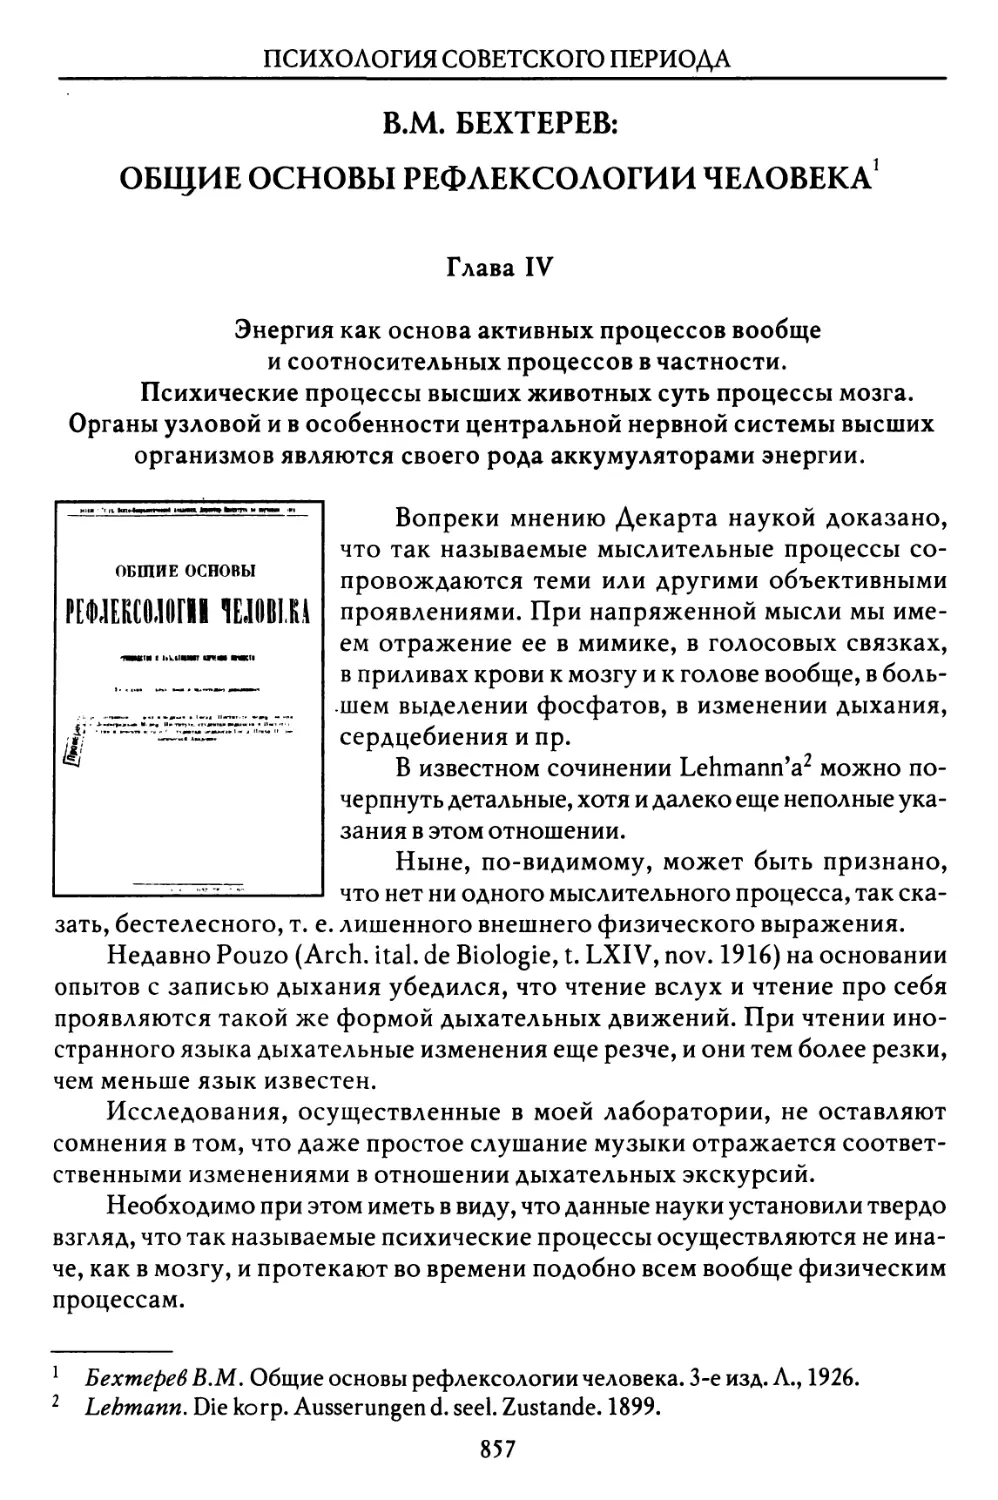 В.М. Бехтерев. Общие основы рефлексологии человека